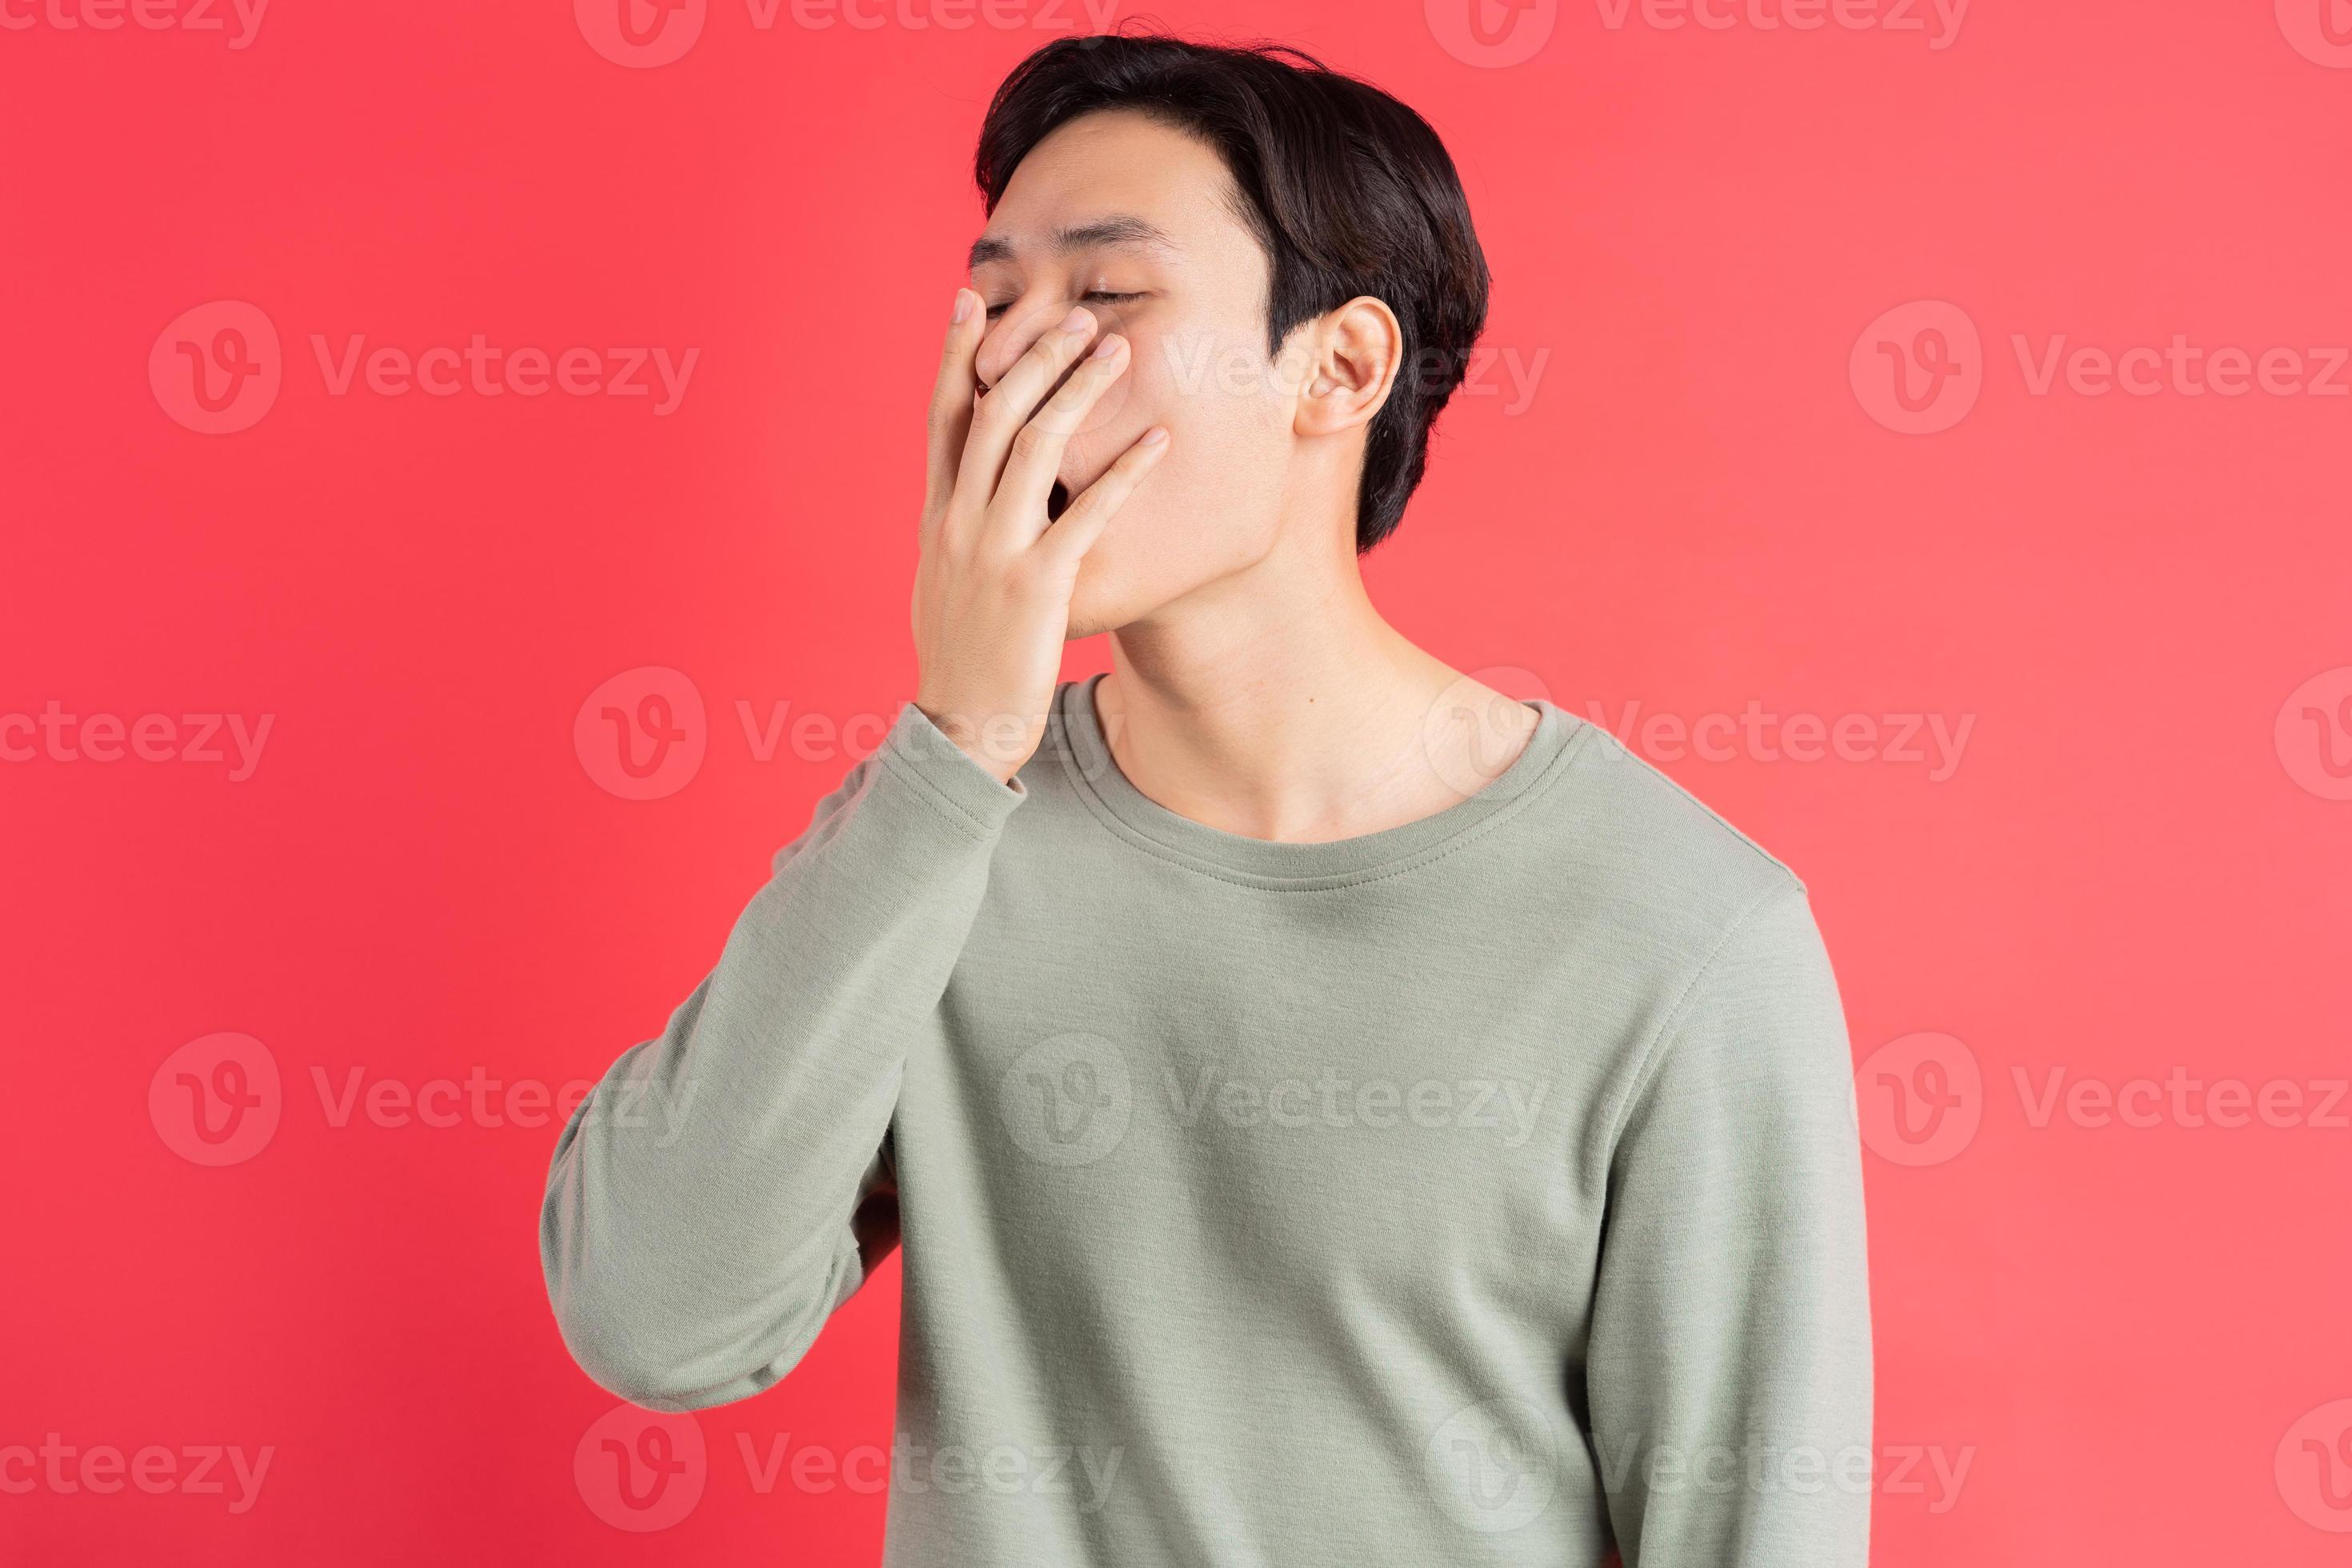 een foto van een knappe Aziatische man die geeuwt met zijn hand voor zijn mond